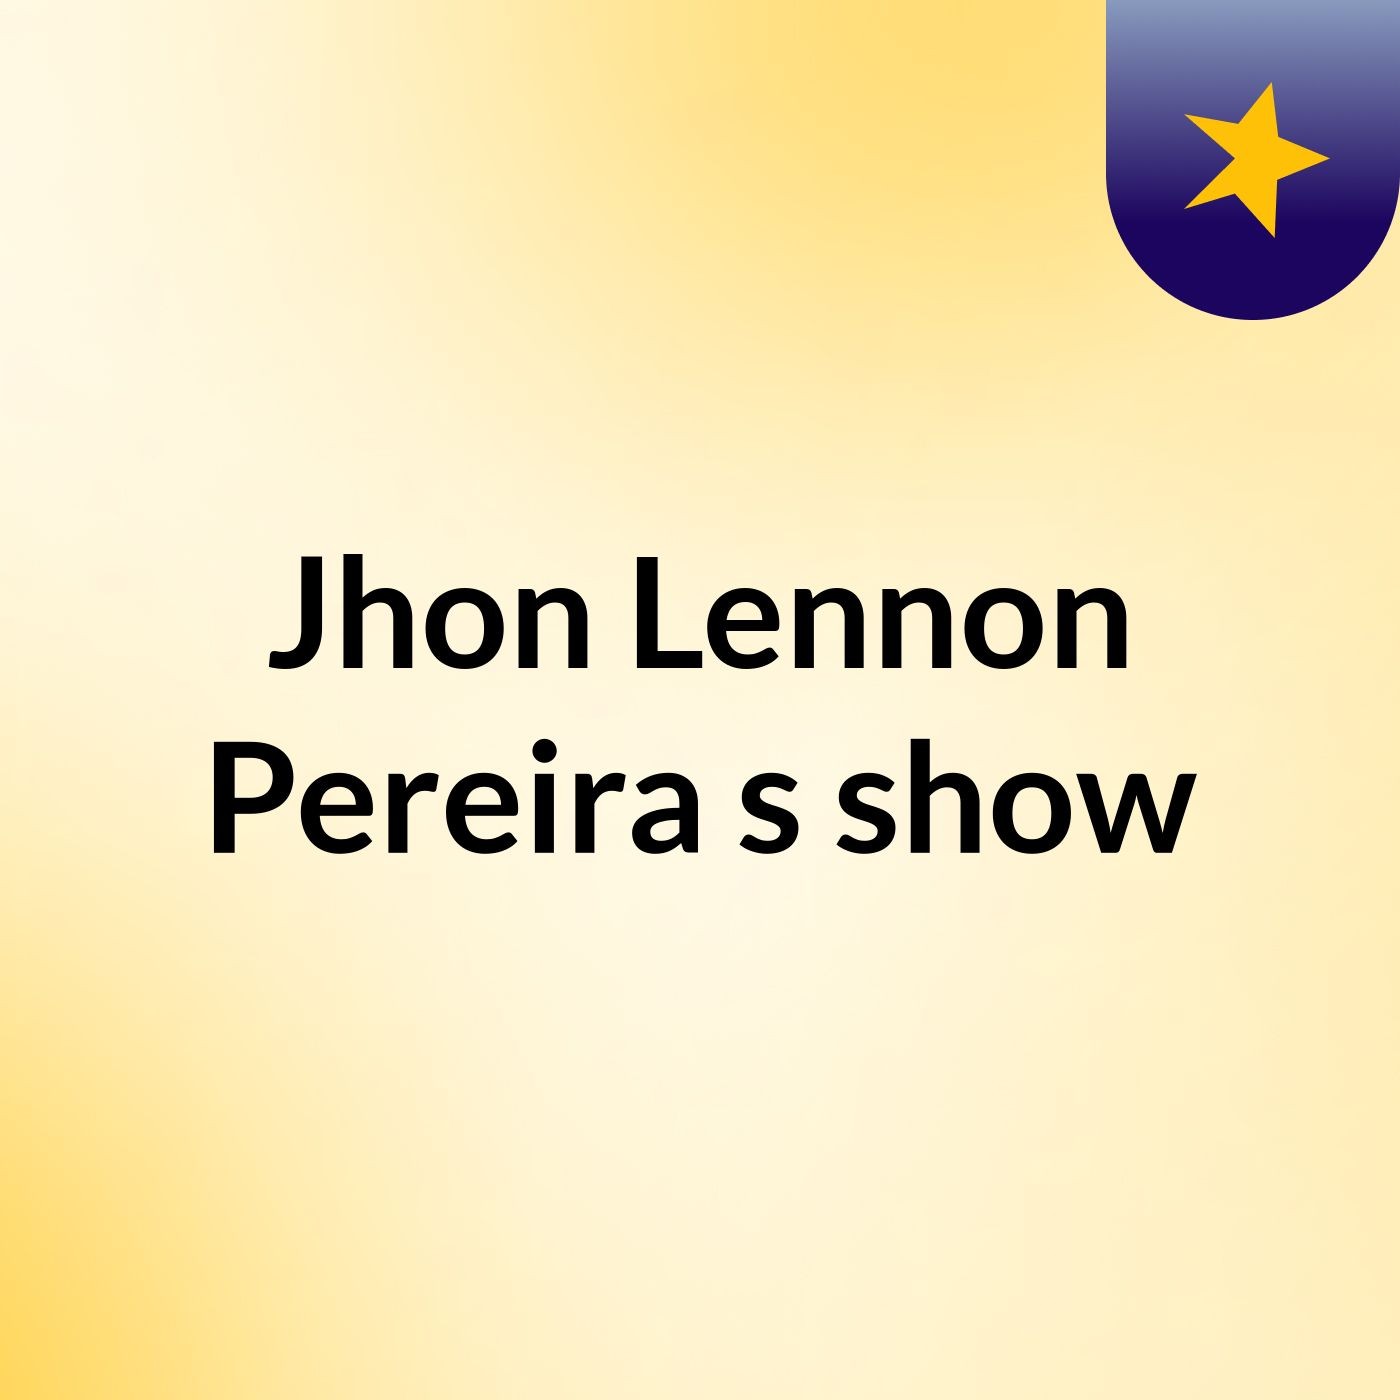 Jhon Lennon Pereira's show